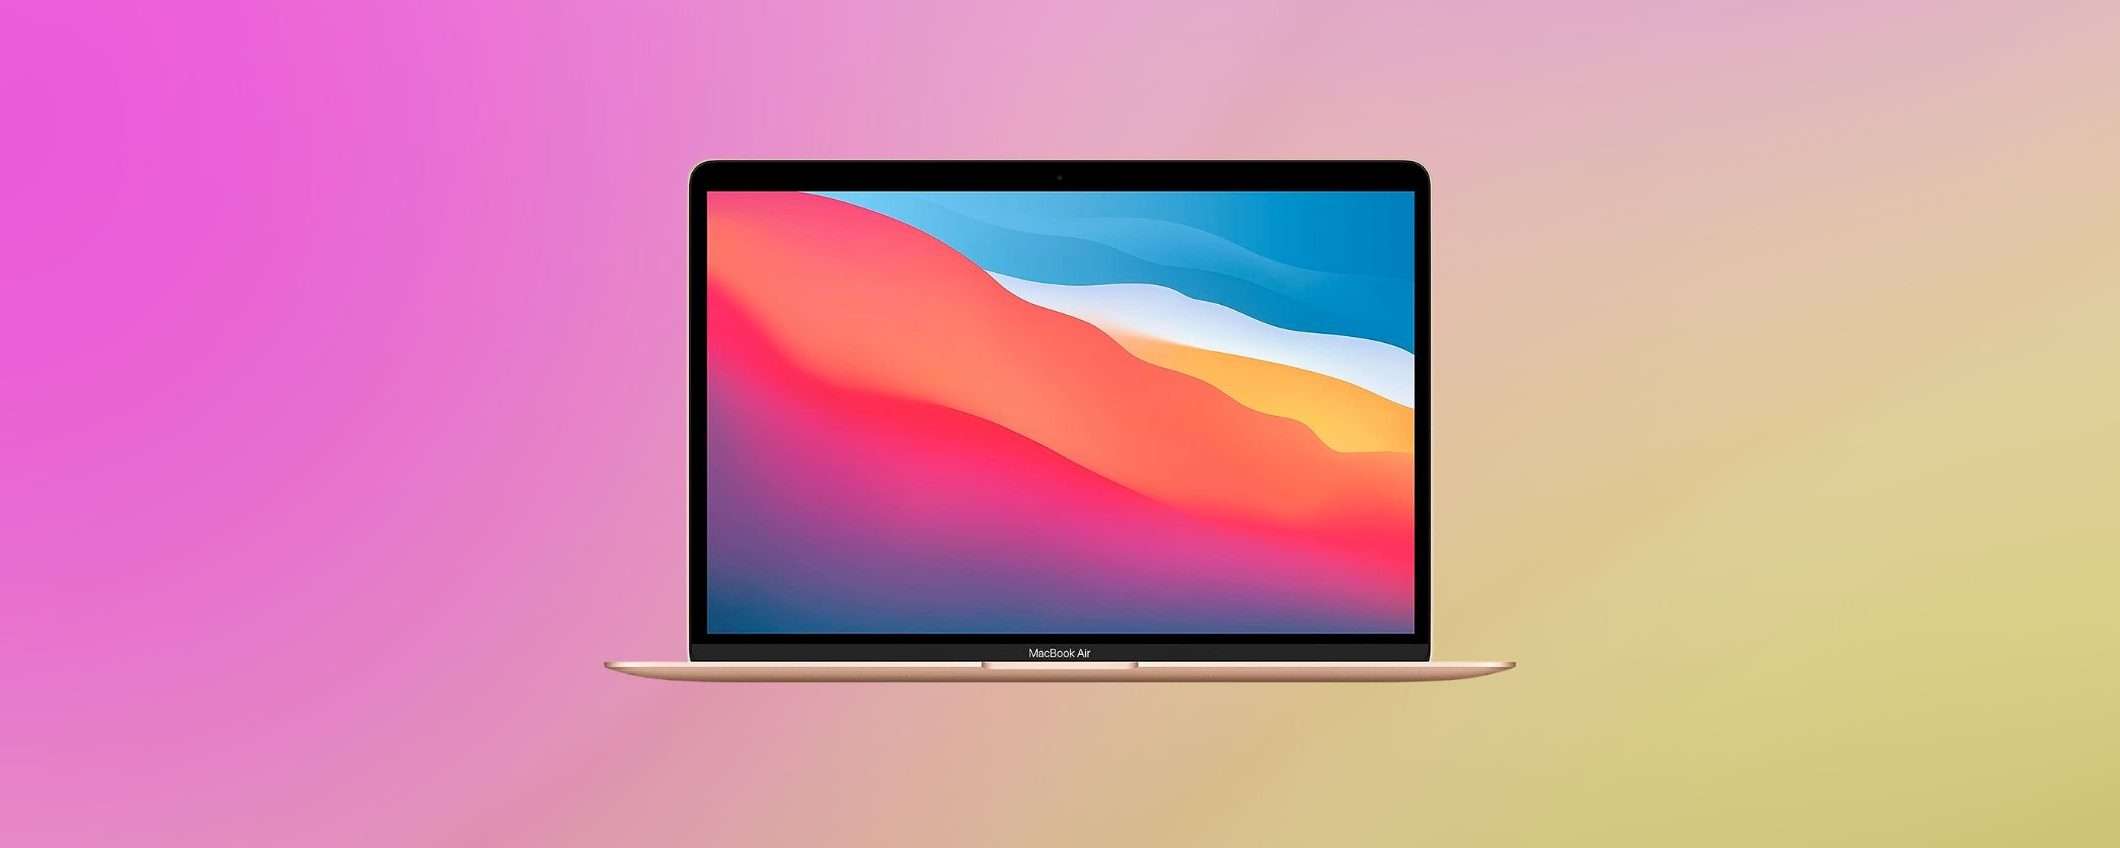 MacBook Air con M1 in OFFERTA a 899€ su Amazon